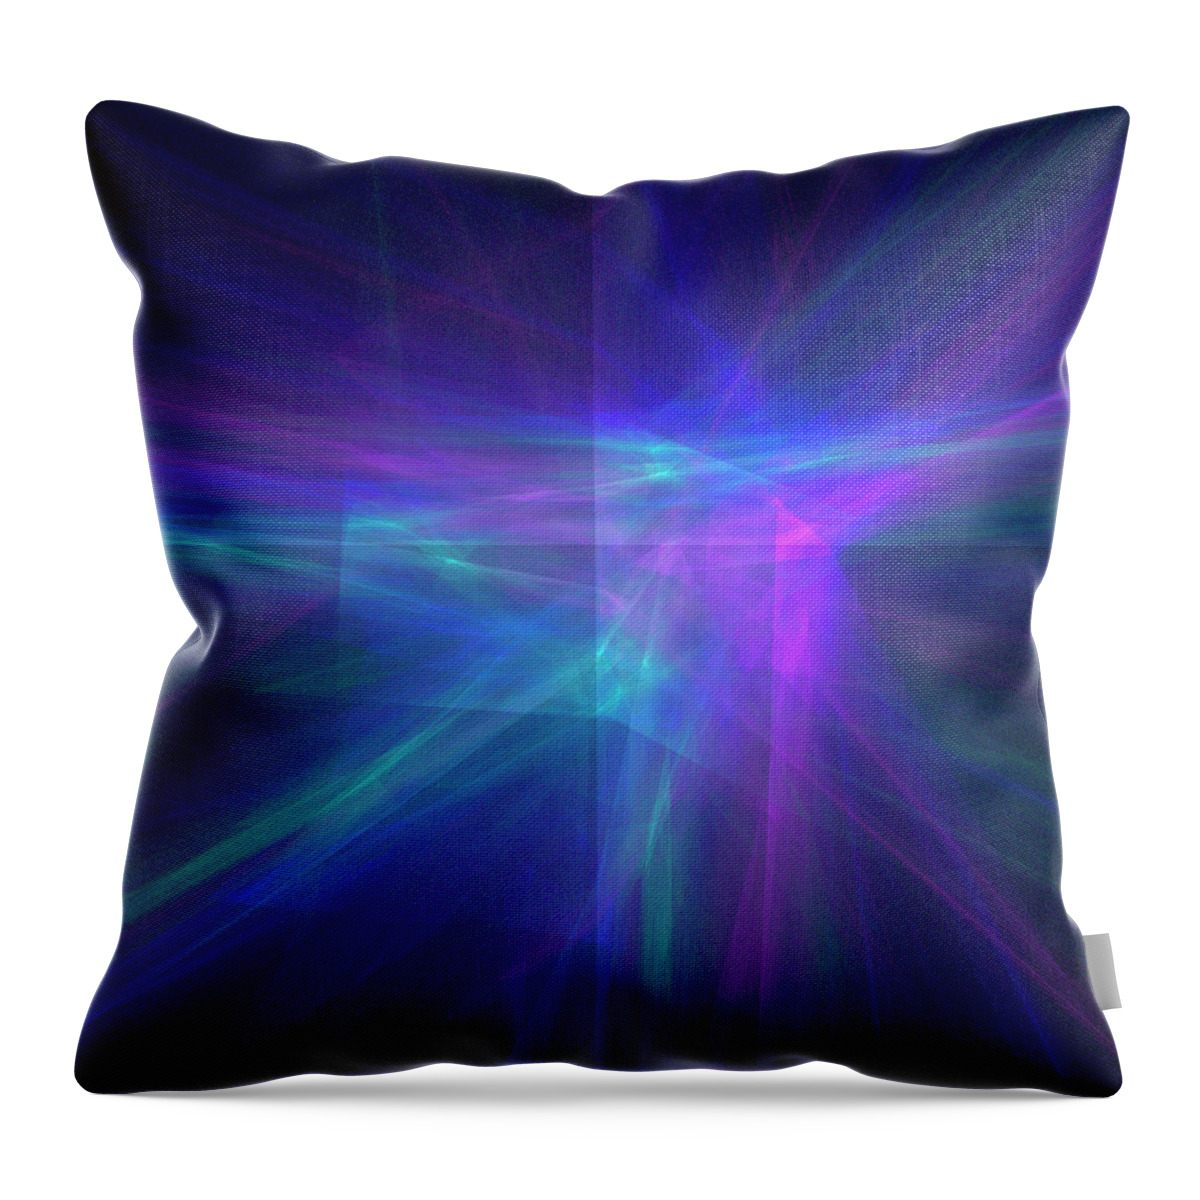 Rick Drent Throw Pillow featuring the digital art Neon by Rick Drent